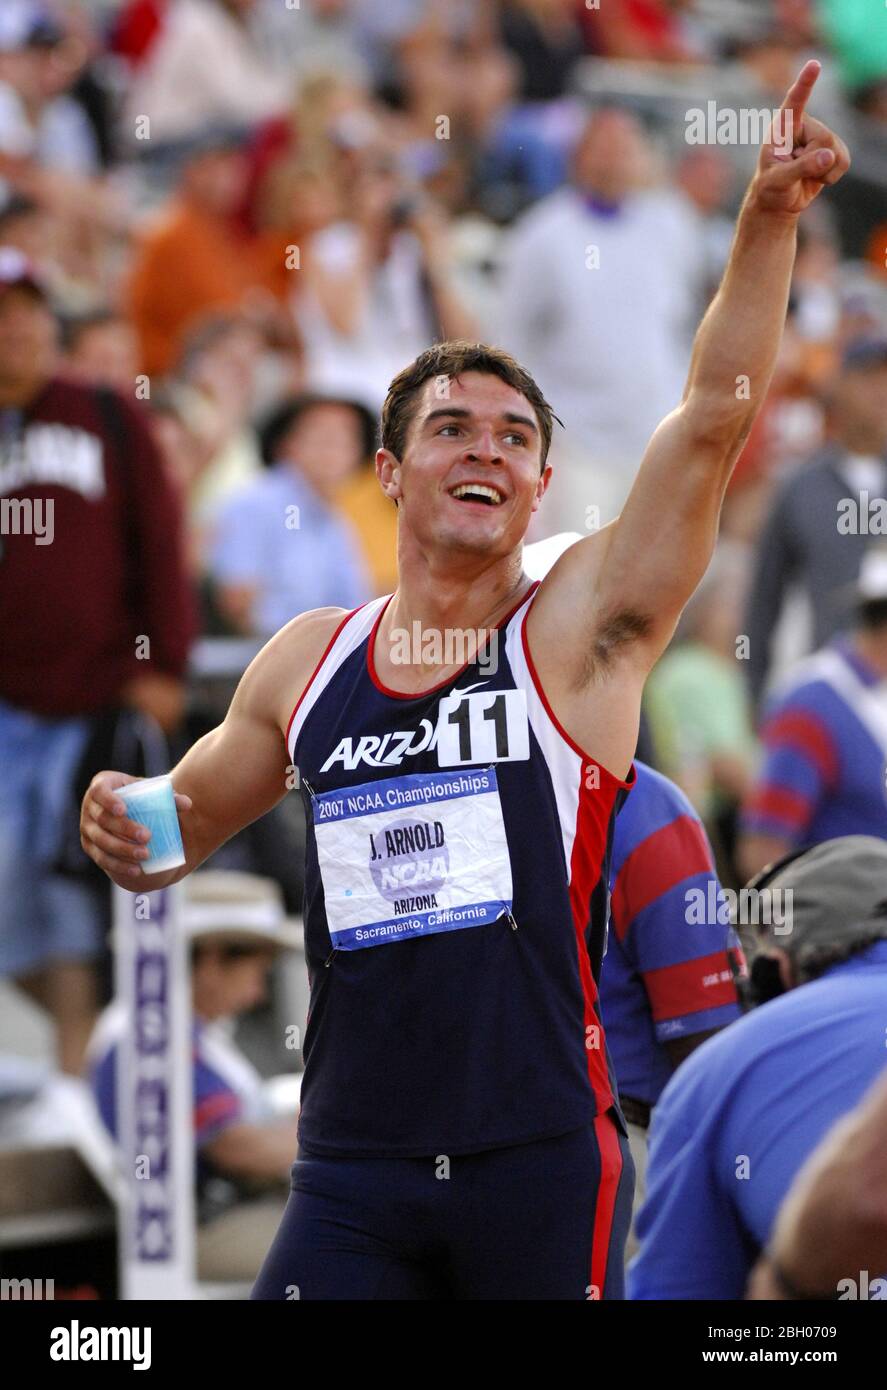 Sacramento, Estados 07 de junio de 2007. Jake Arnold de Arizona celebra después de ganar el decathlon por segundo año consecutivo con 8,215 puntos 20.91 en el Campeonato de